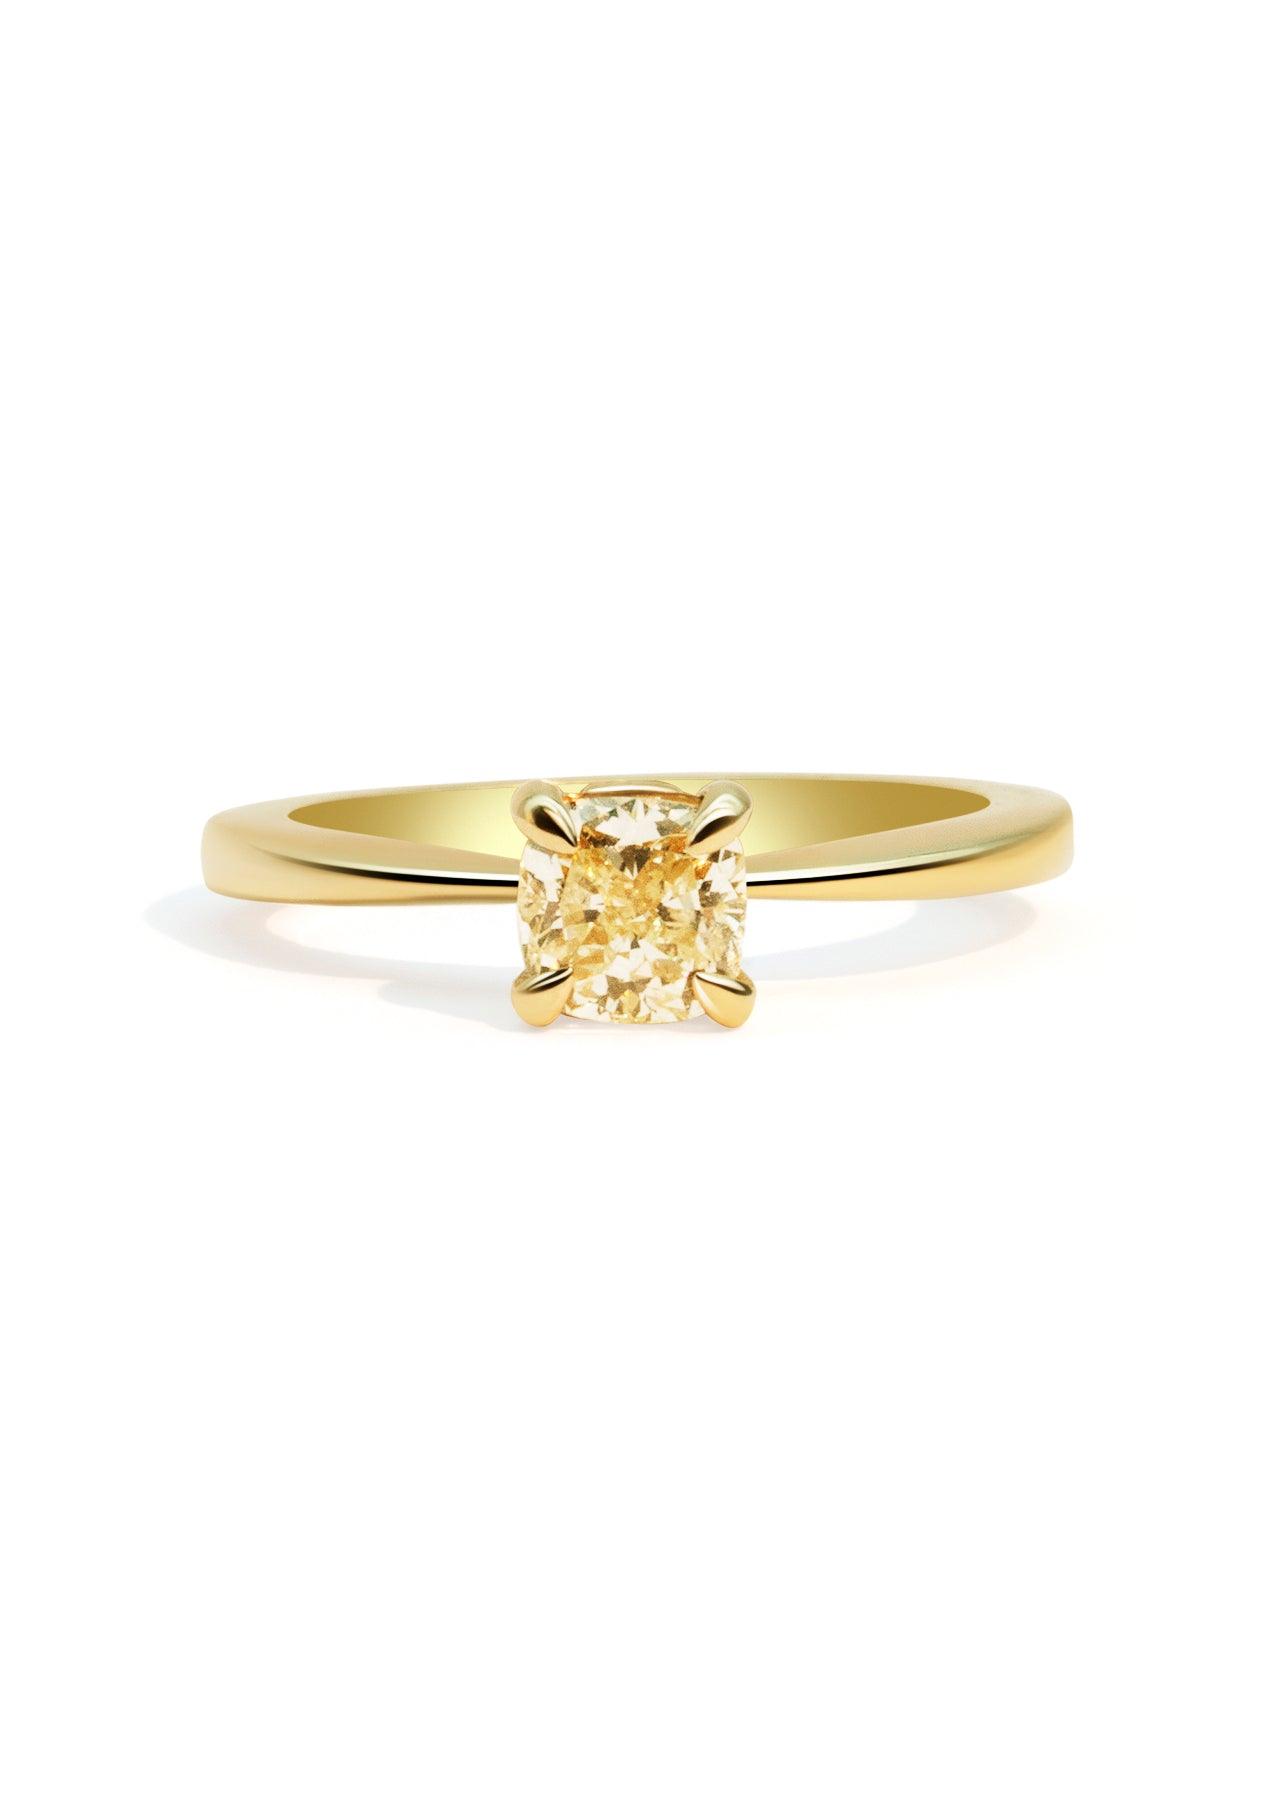 The June 1ct Yellow Diamond Ring